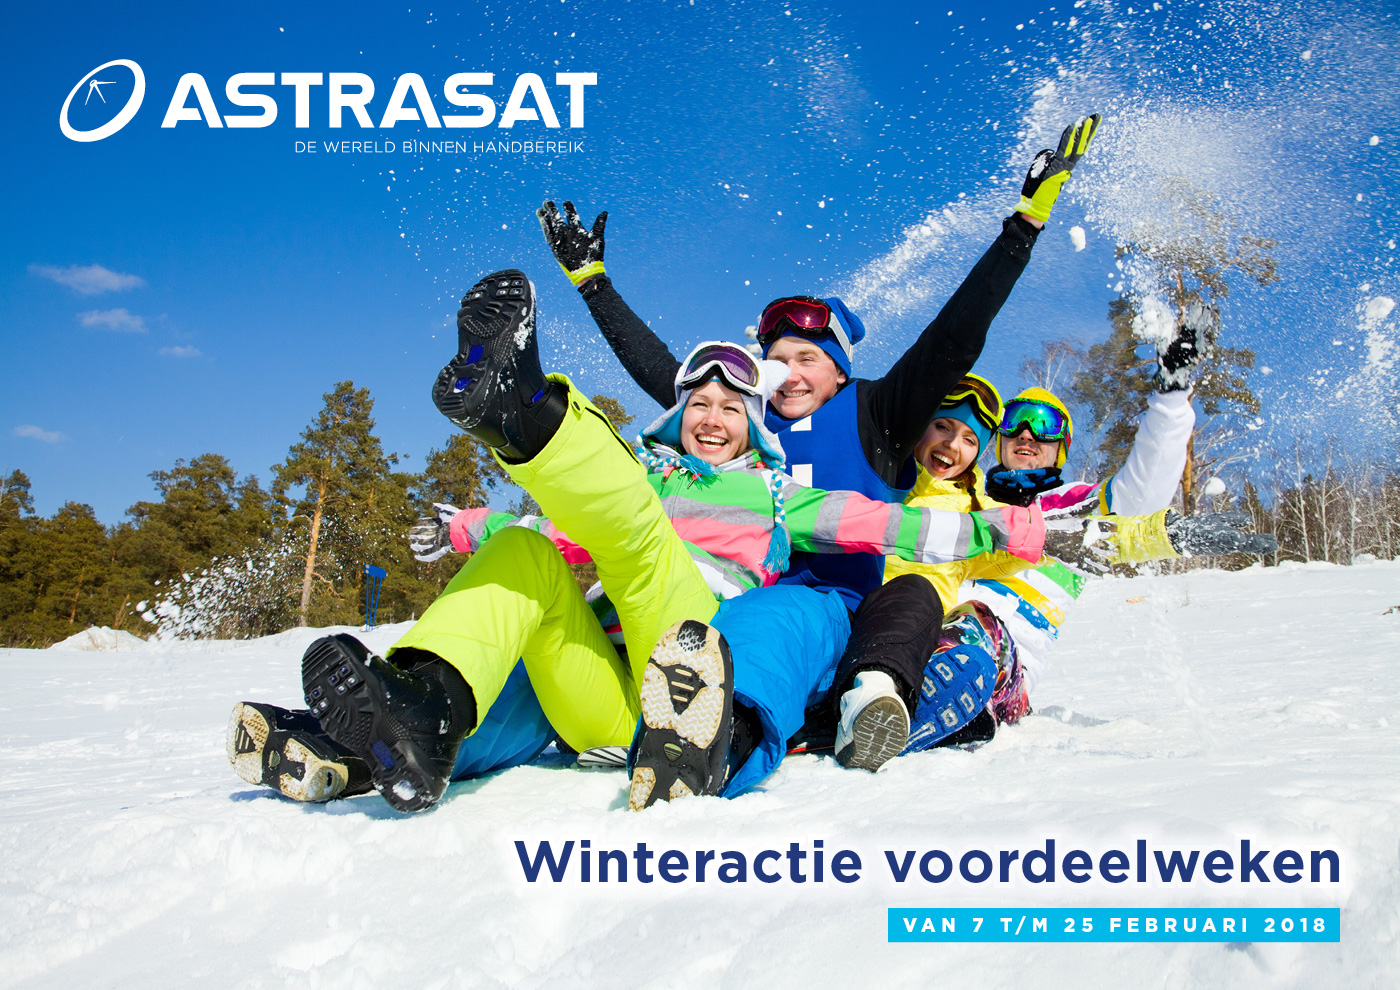 De Astrasat Winteractie voordeelweken zijn weer van start!